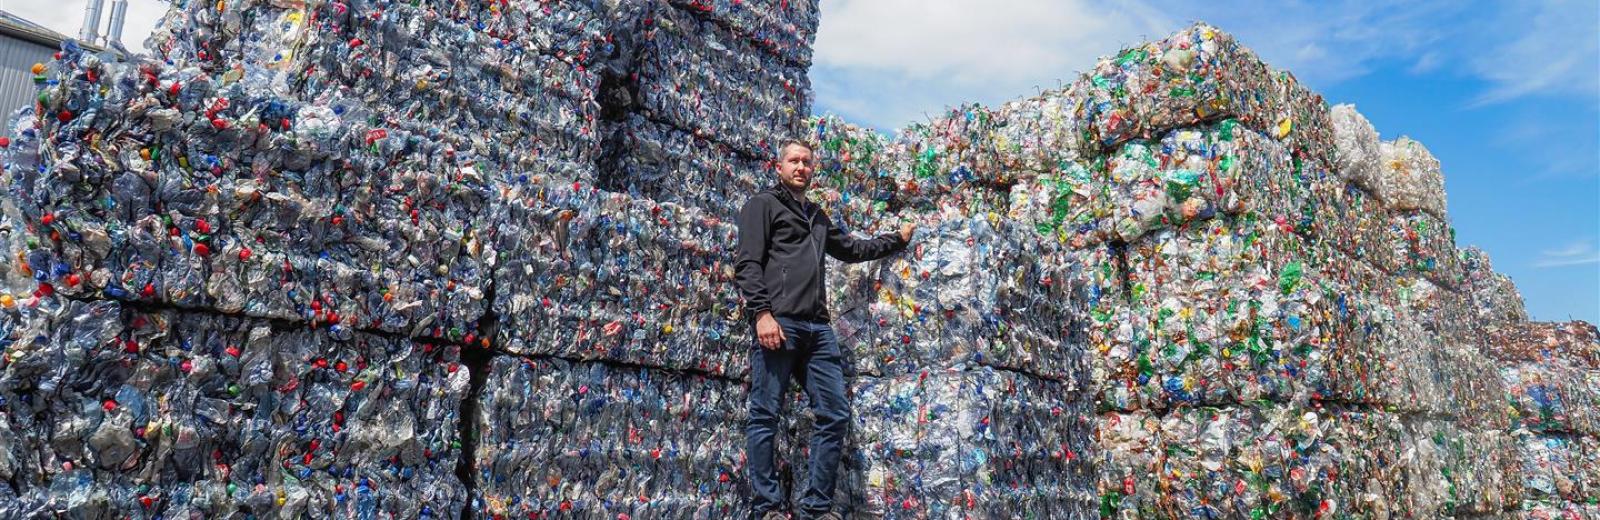 Die Müller Recycling AG sortiert täglich 90 Tonnen PET-Getränkeflaschen nach ihrer Farbe. Geschäftsführer Thomas Müller ist stolz auf die Reinheit und die hohe Qualität des Materials. © Müller Recycling AG